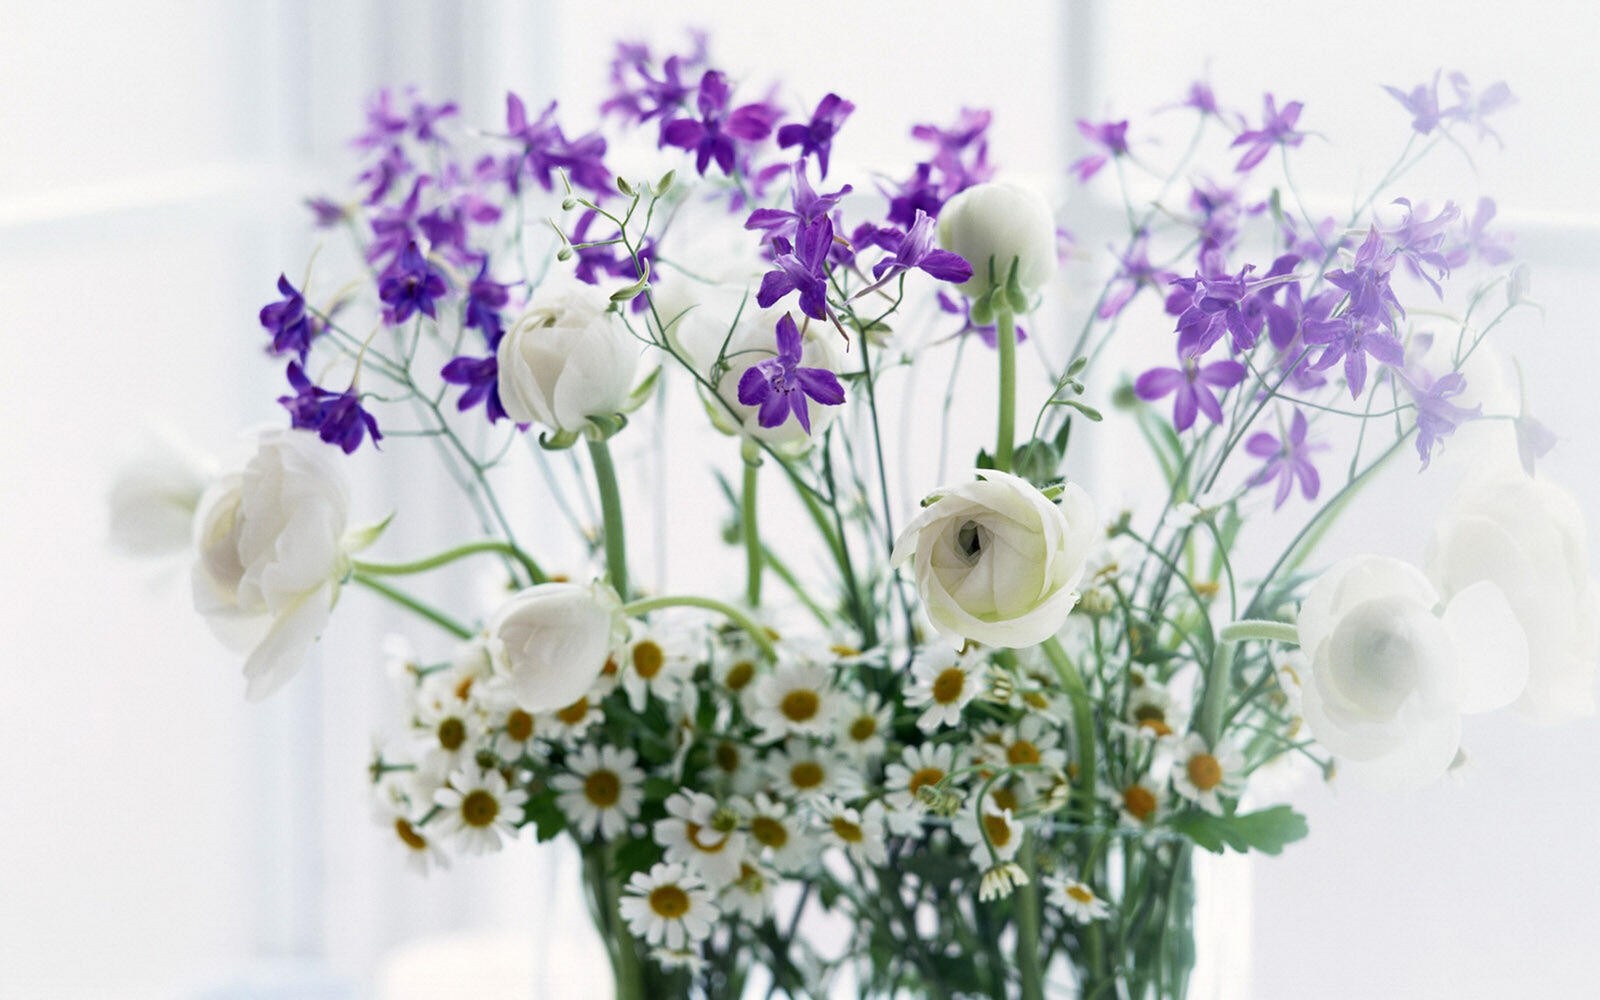 Wallpapers vase daisies flowers field on the desktop